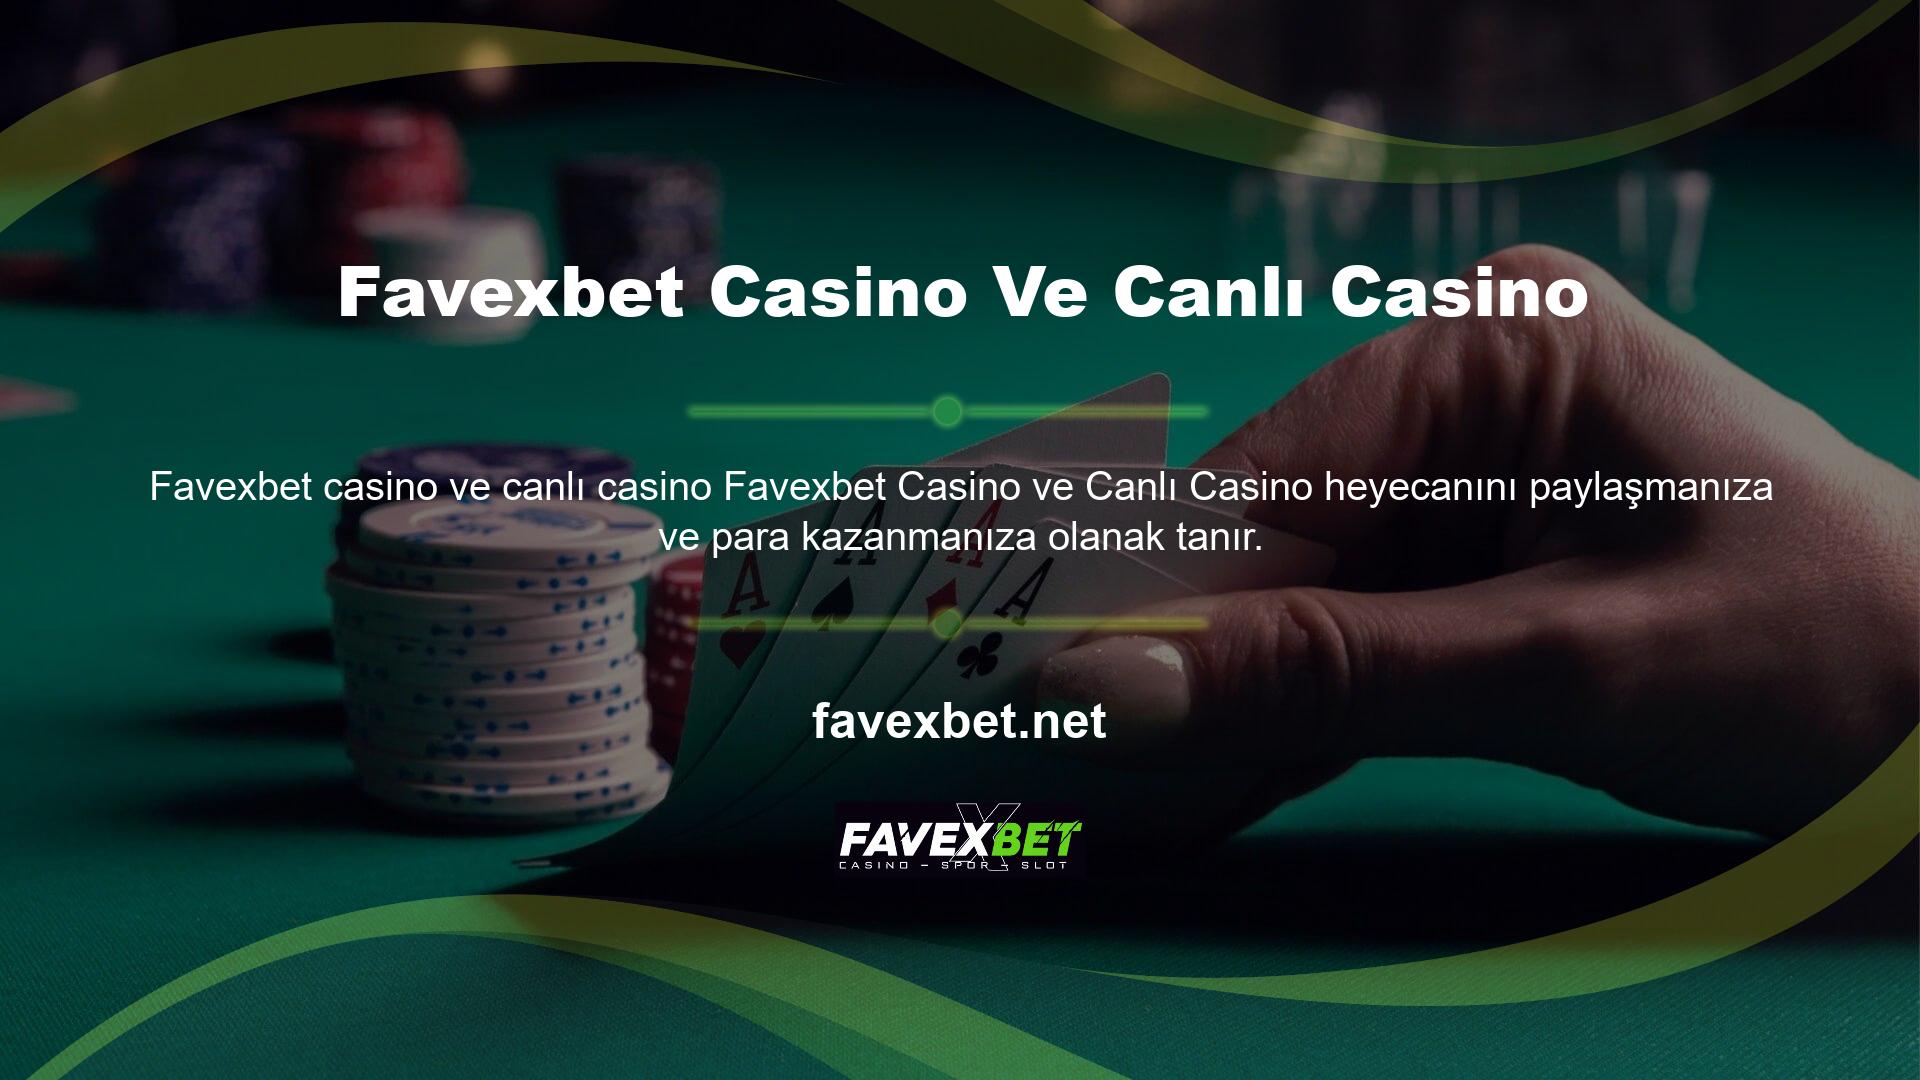 Casino lobisinde renkli jackpot oyunları ve 3D slot oyunları oynayarak vakit geçirebilirsiniz ve Favexbet oyunları mevcuttur